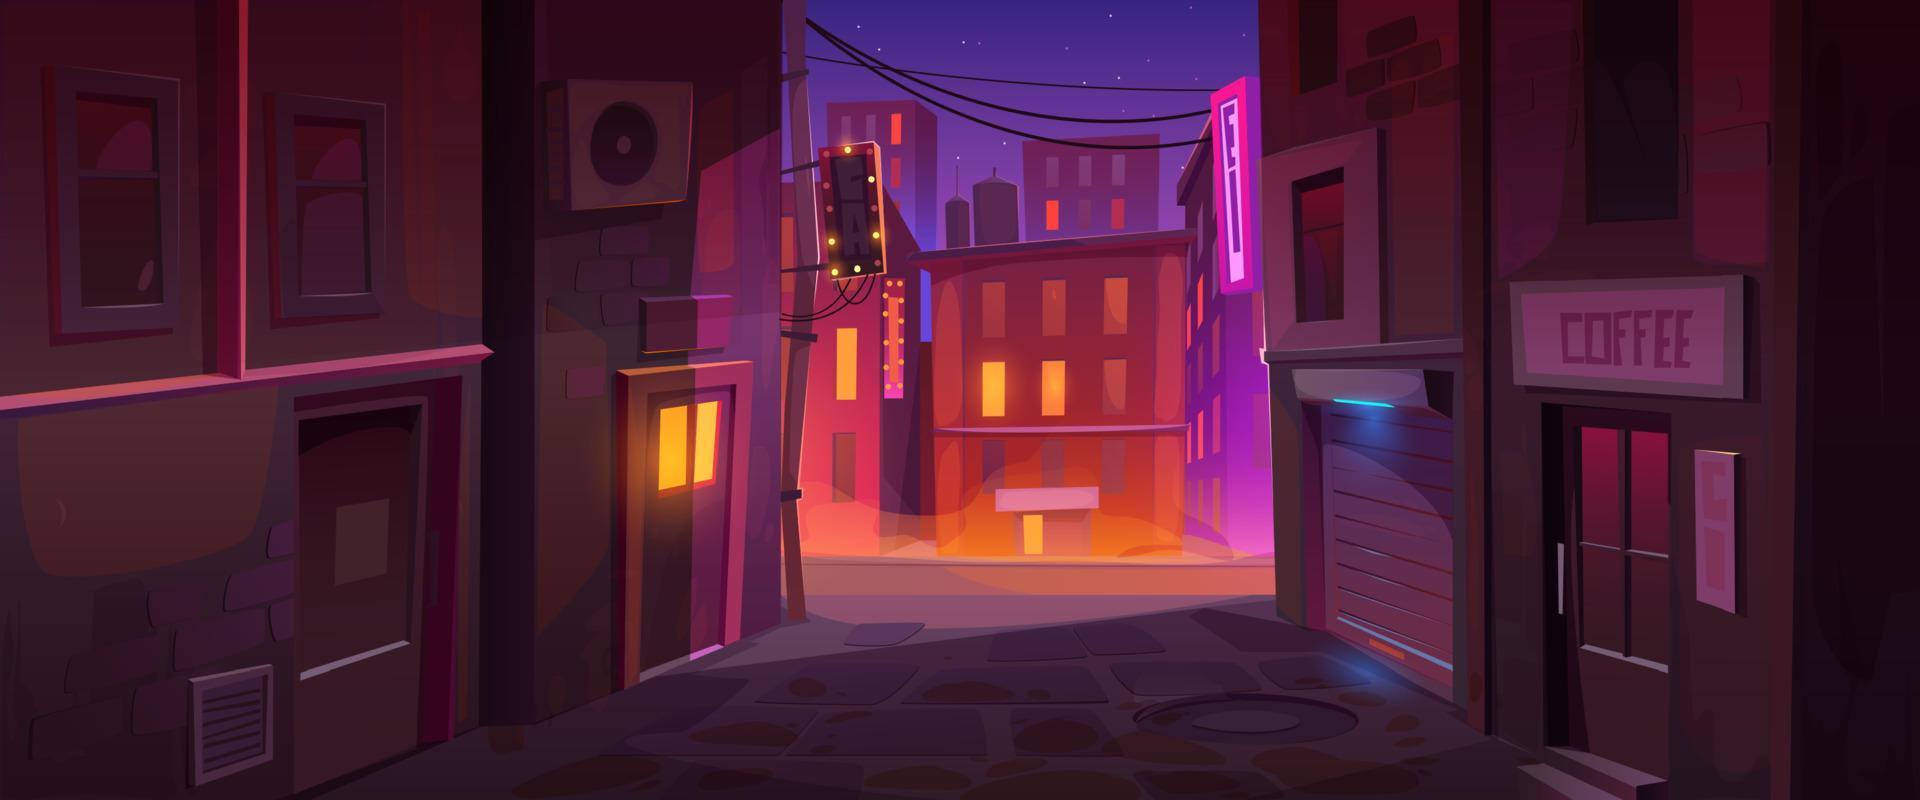 Nacht Stadt Straßenecke Stadtbild Hintergrund vektor